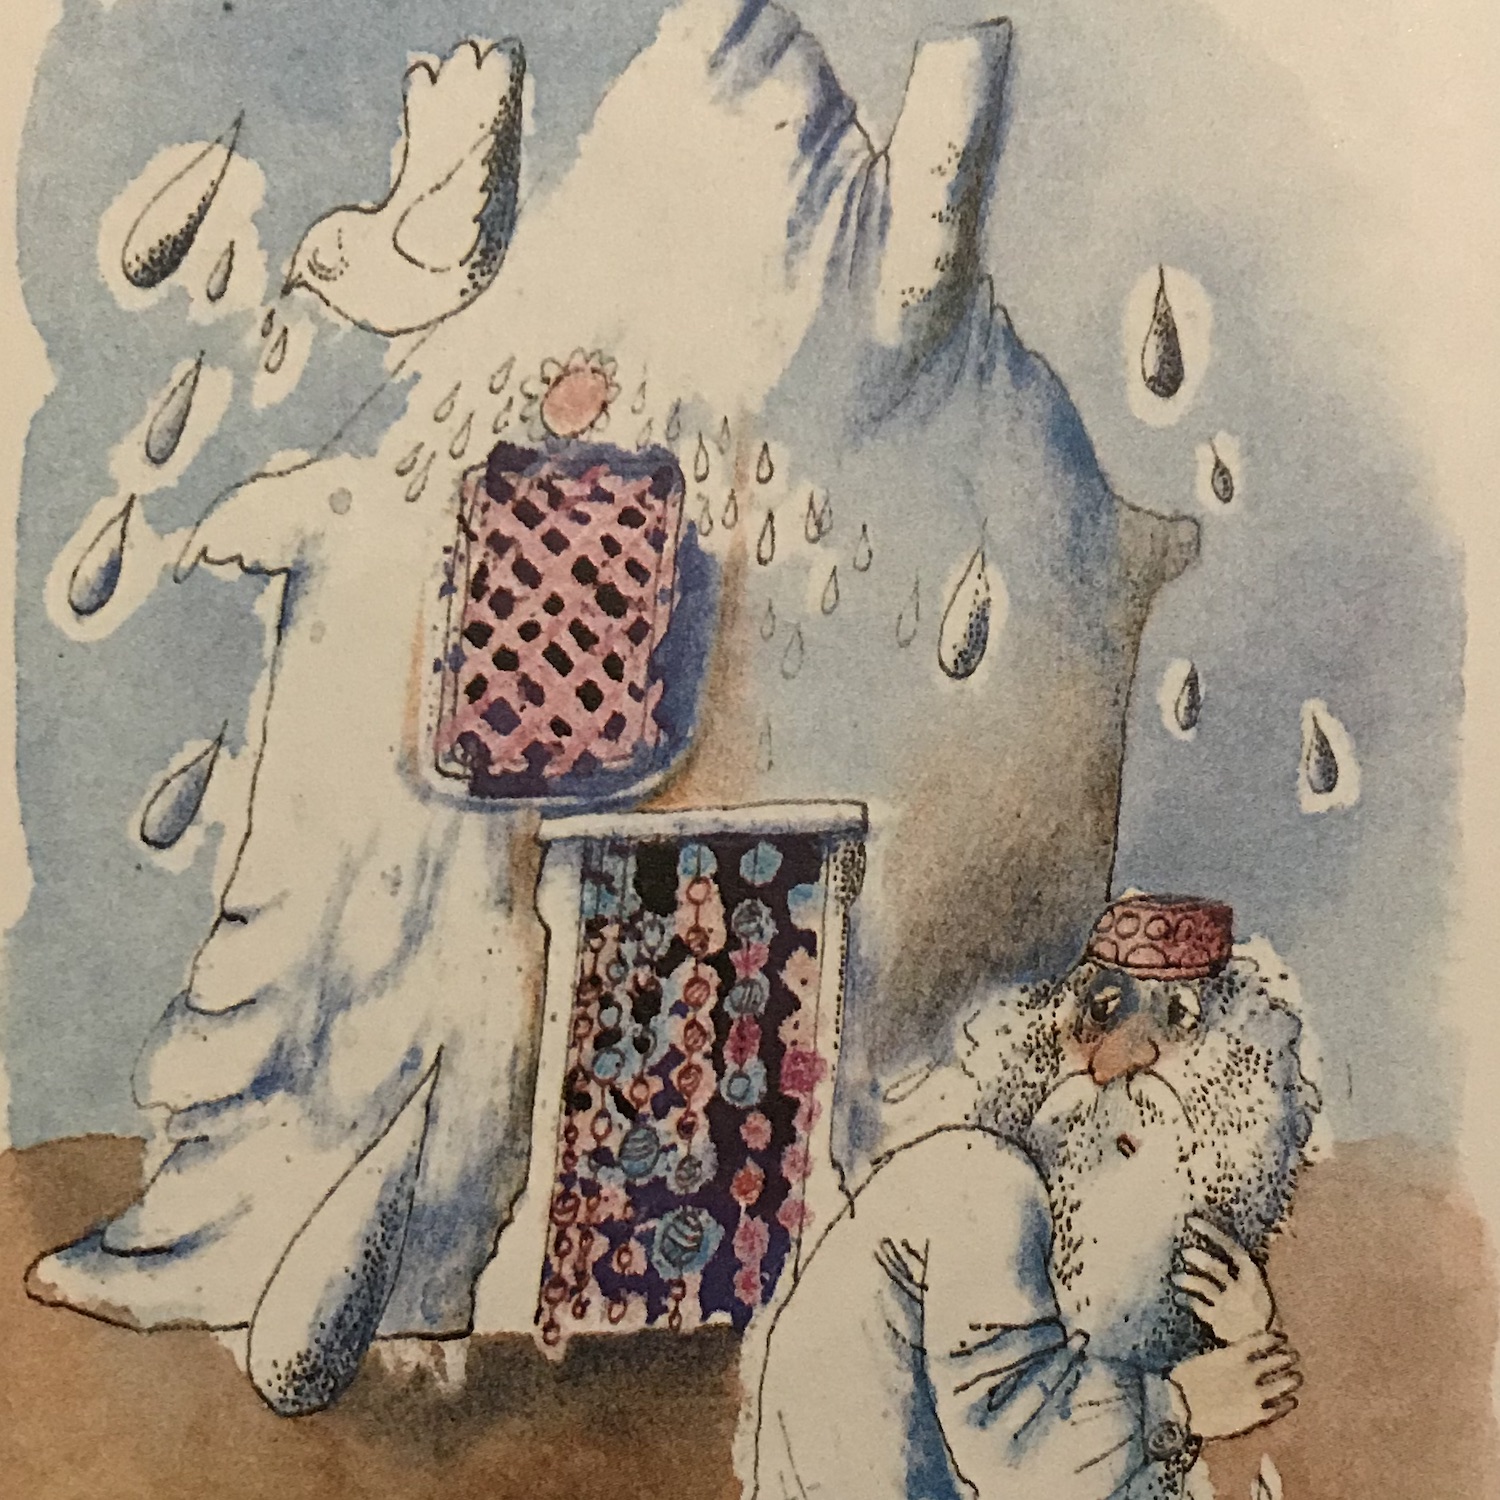 Zeichnung eines zerfließenden Häuschens aus Salz, vor dem ein sorgenvoll blickender Mann steht